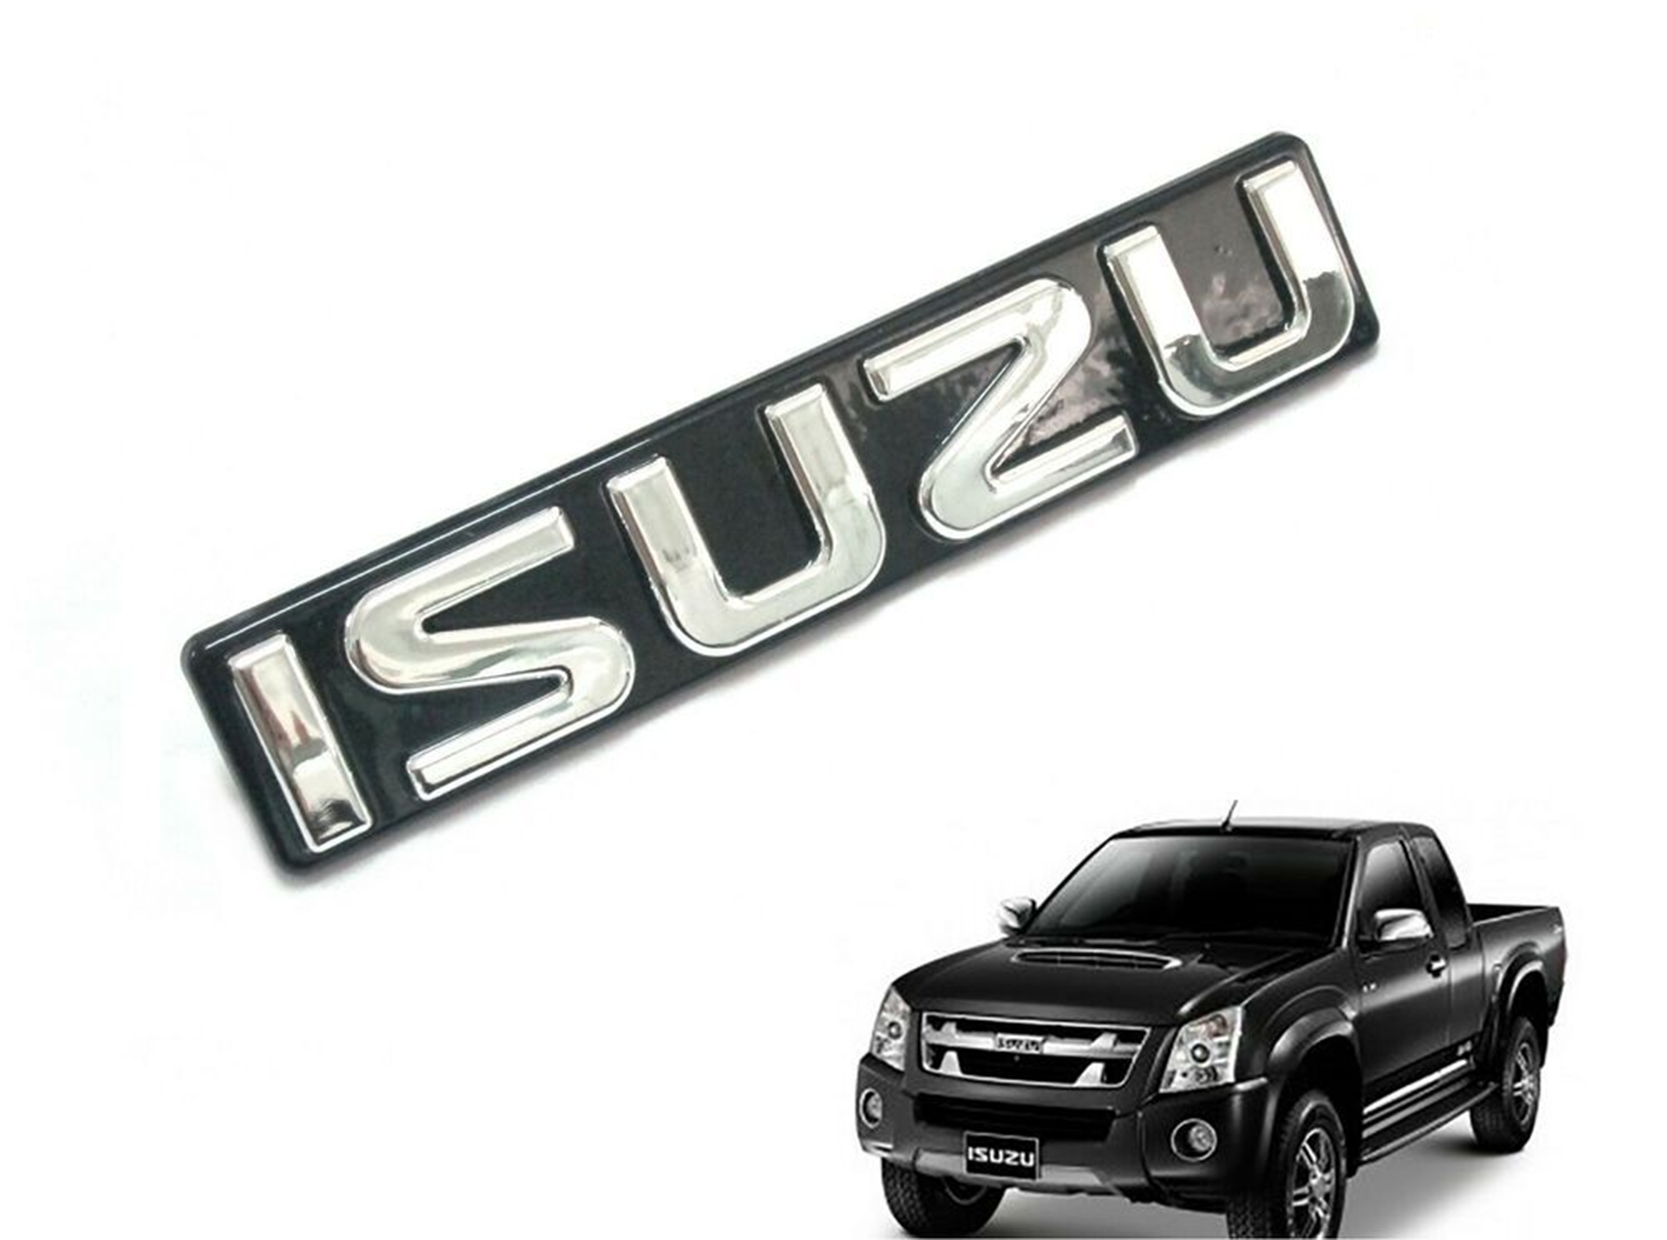 Isuzu - hãng xe bán tải hàng đầu Nhật Bản